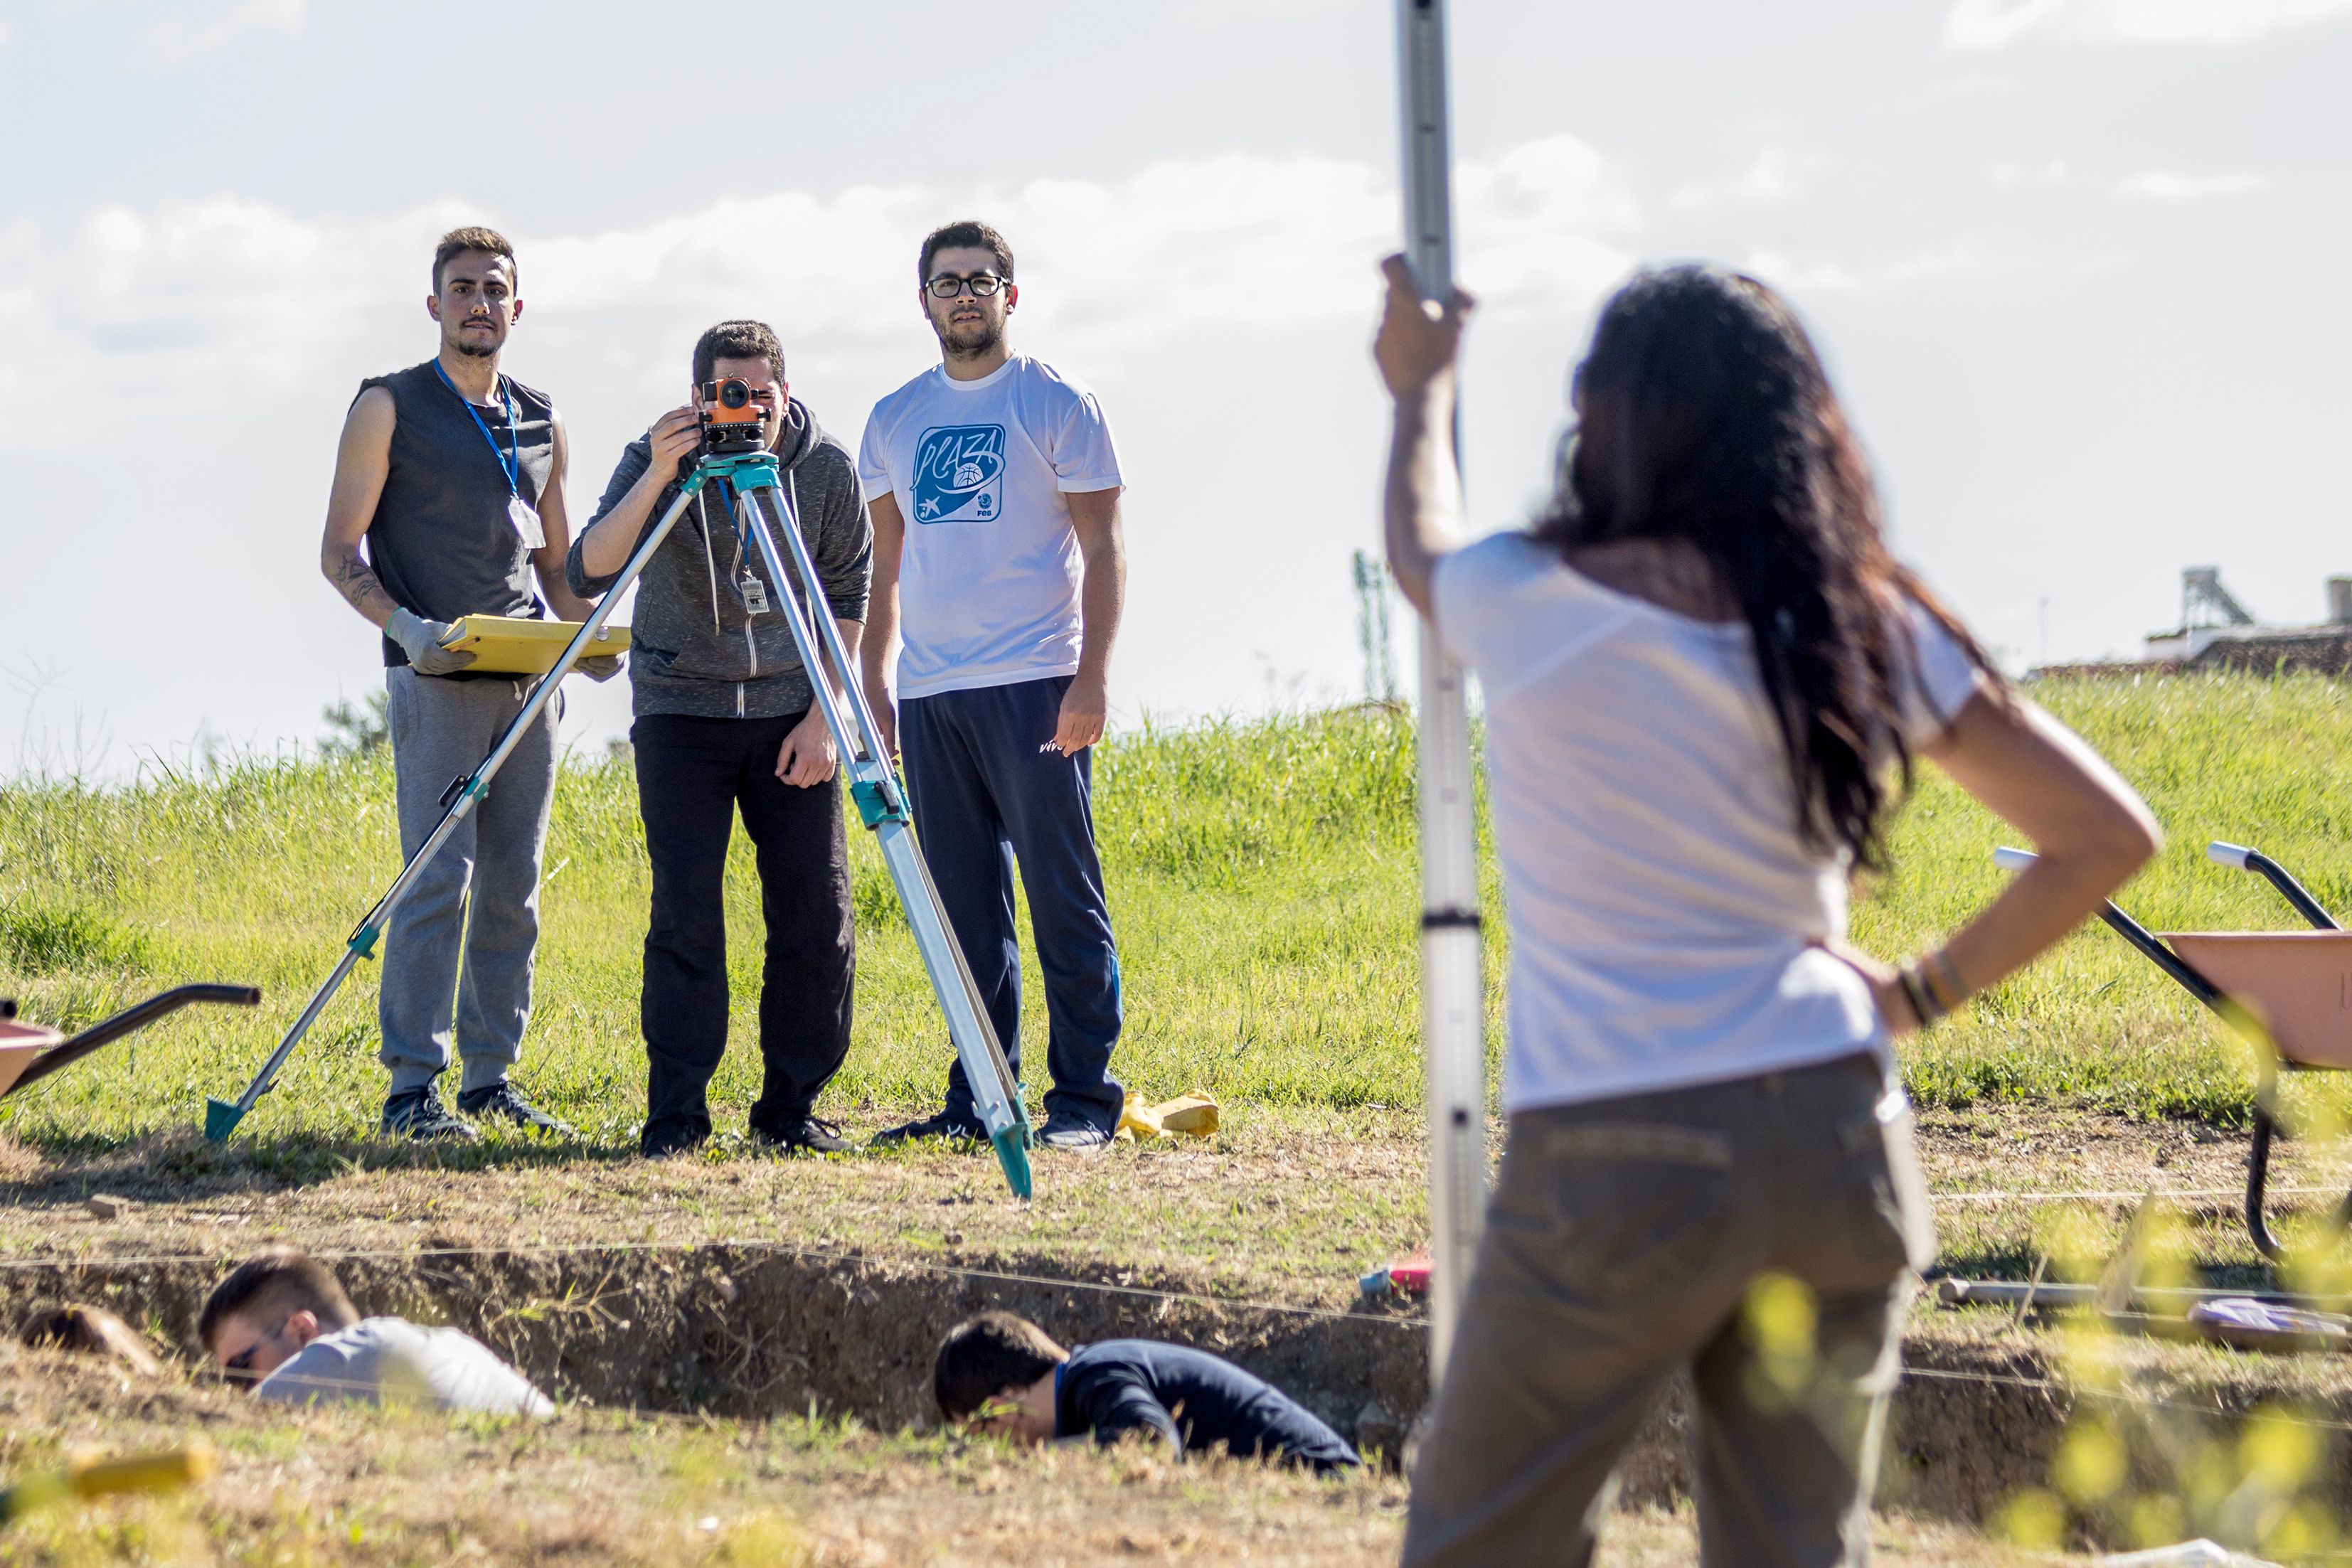 Inicio de la campaña de excavaciones en la muralla tardoantigua de Itálica 2019 a cargo del equipo de la Universidad Pablo de Olavide dirigido por Rafael Hidalgo Prieto. FOTO: DANIEL GONZÁLEZ ACUÑA